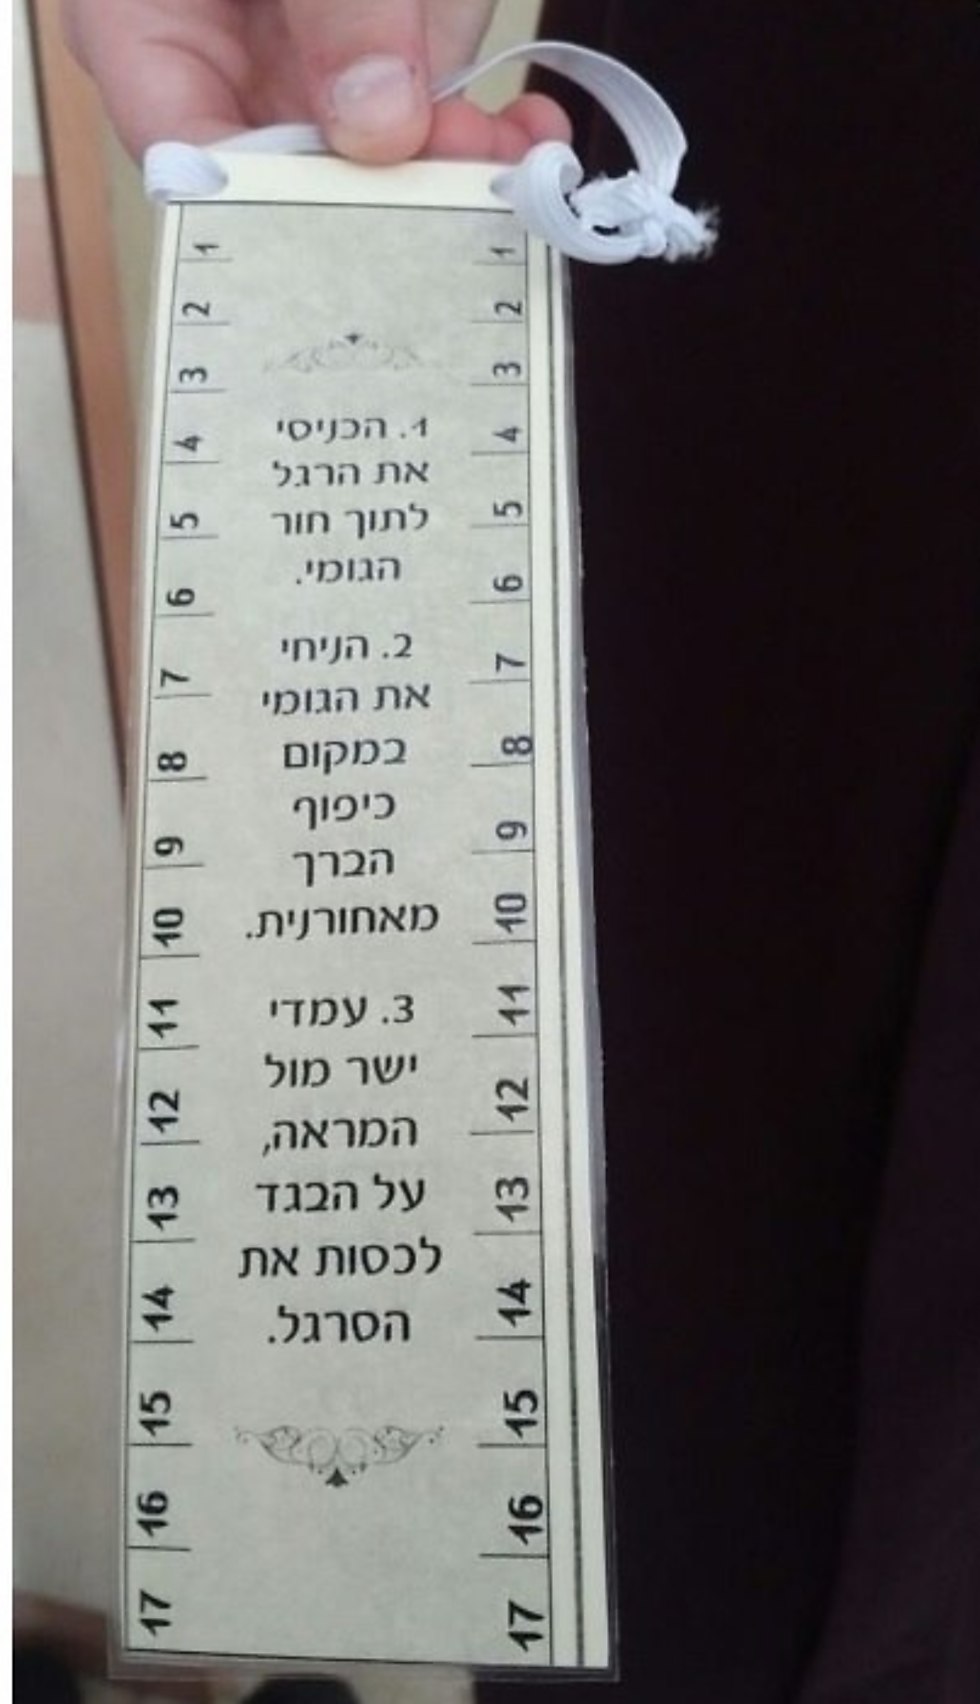  "Линейка скромности" в одной из религиозных школ с отметками длины и инструкцией